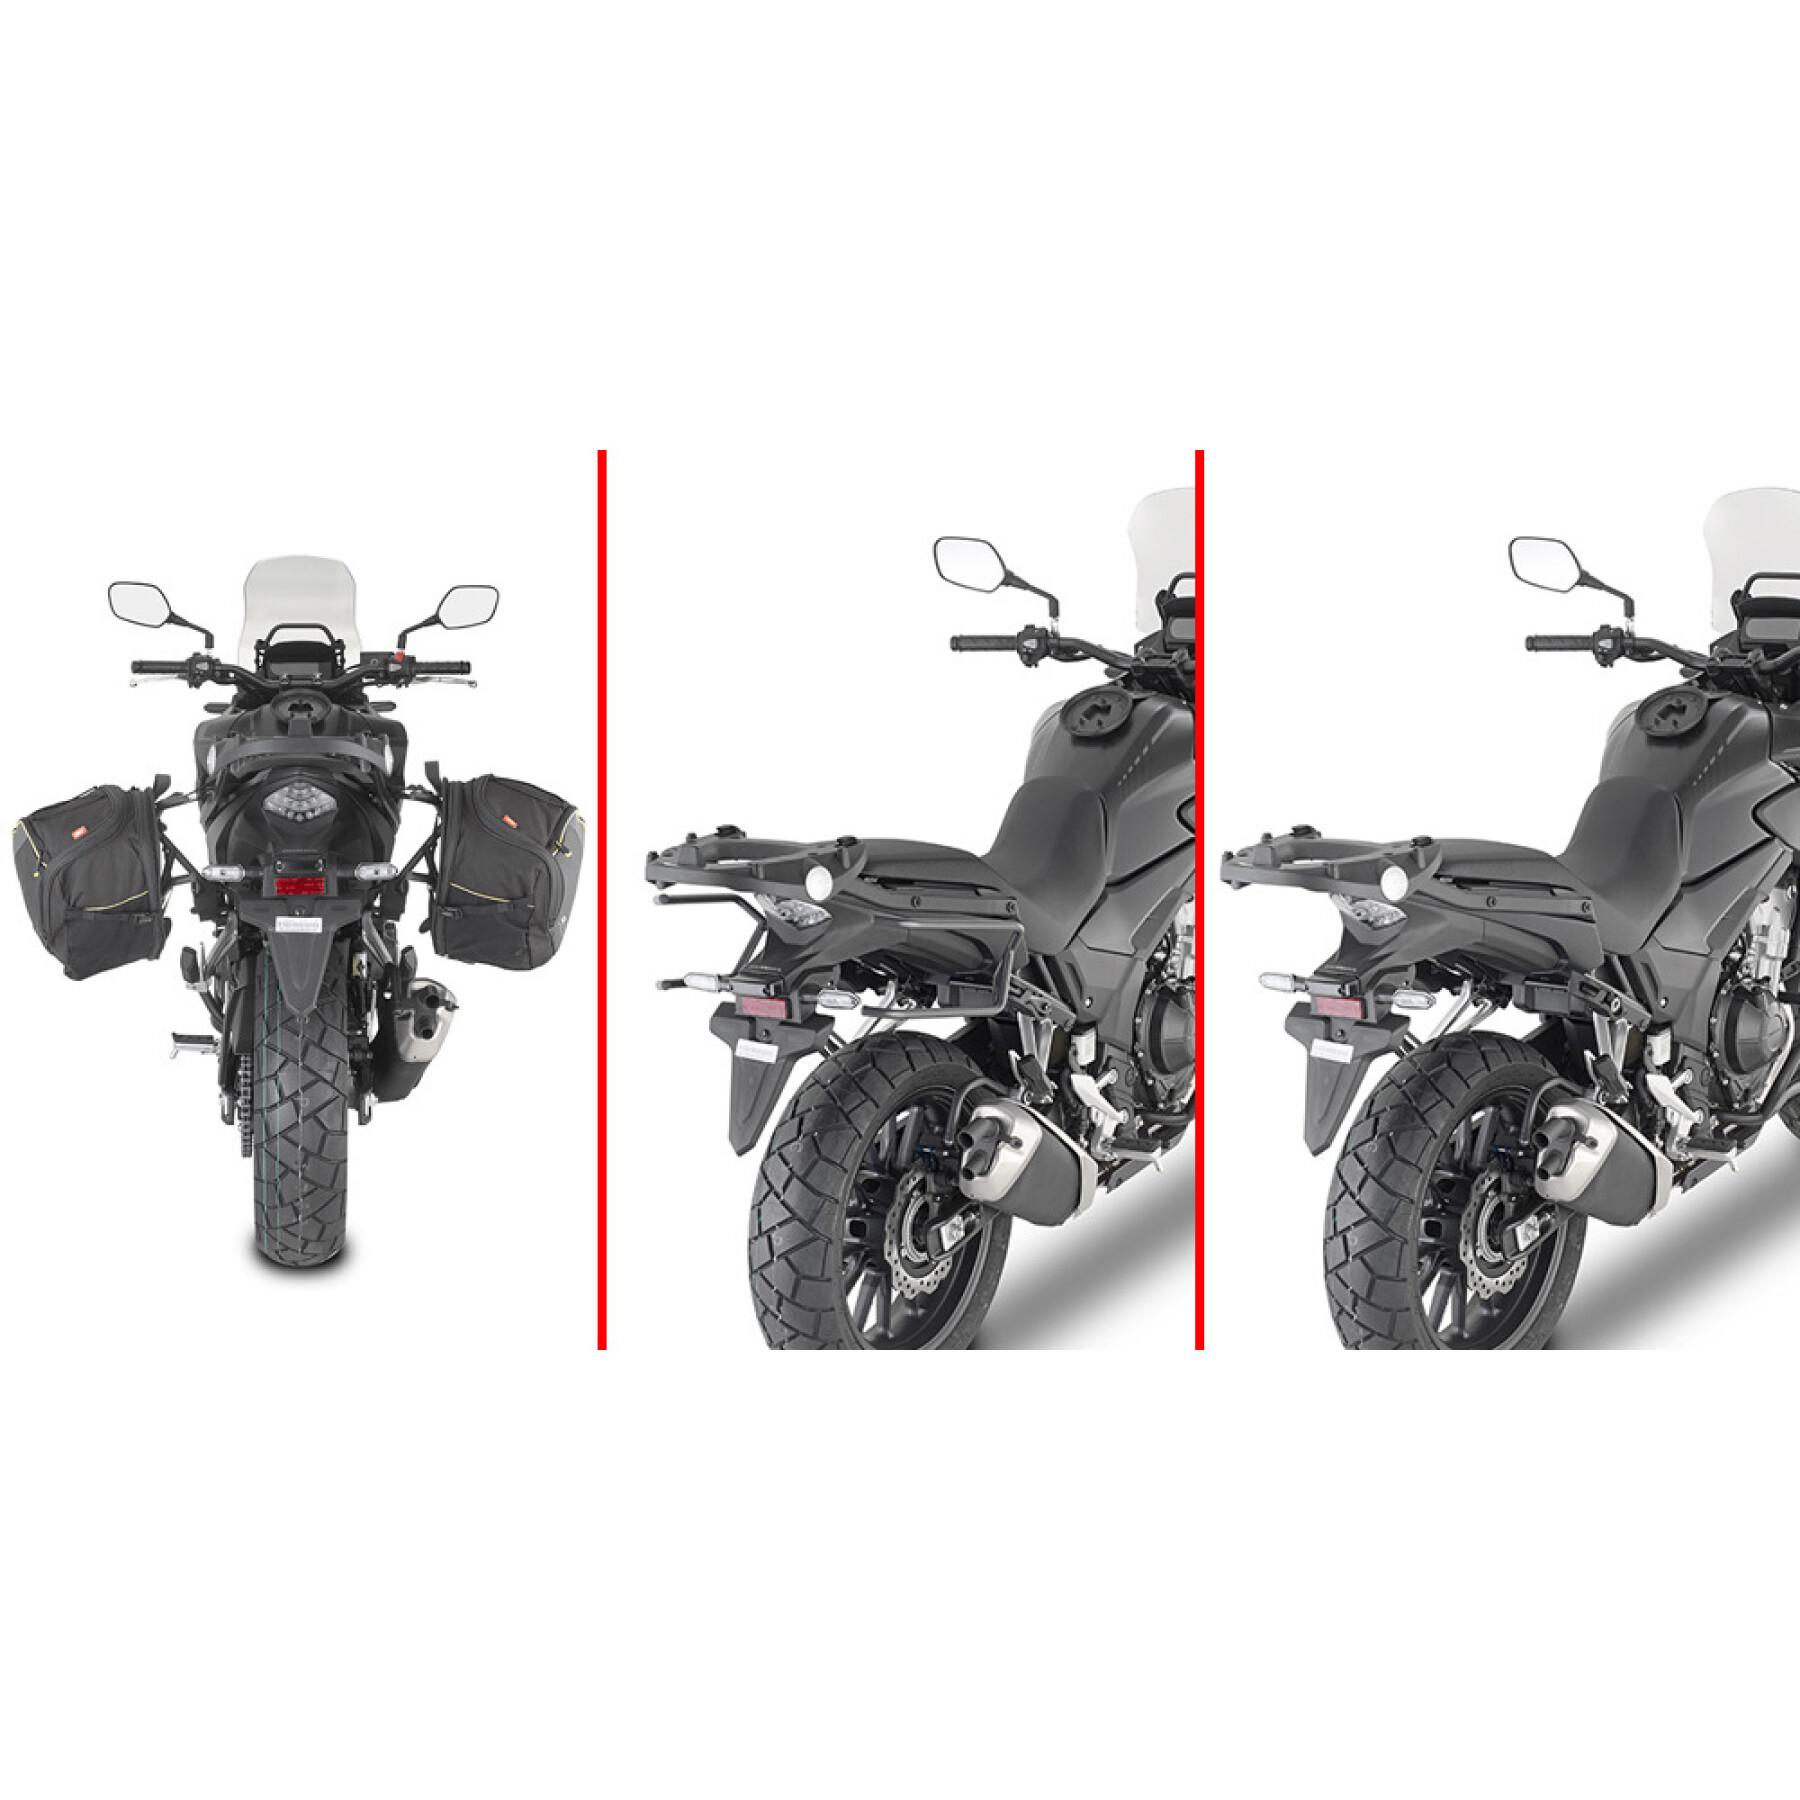 Motorrad-Standartenschutz Givi Honda Cb500X 19-22